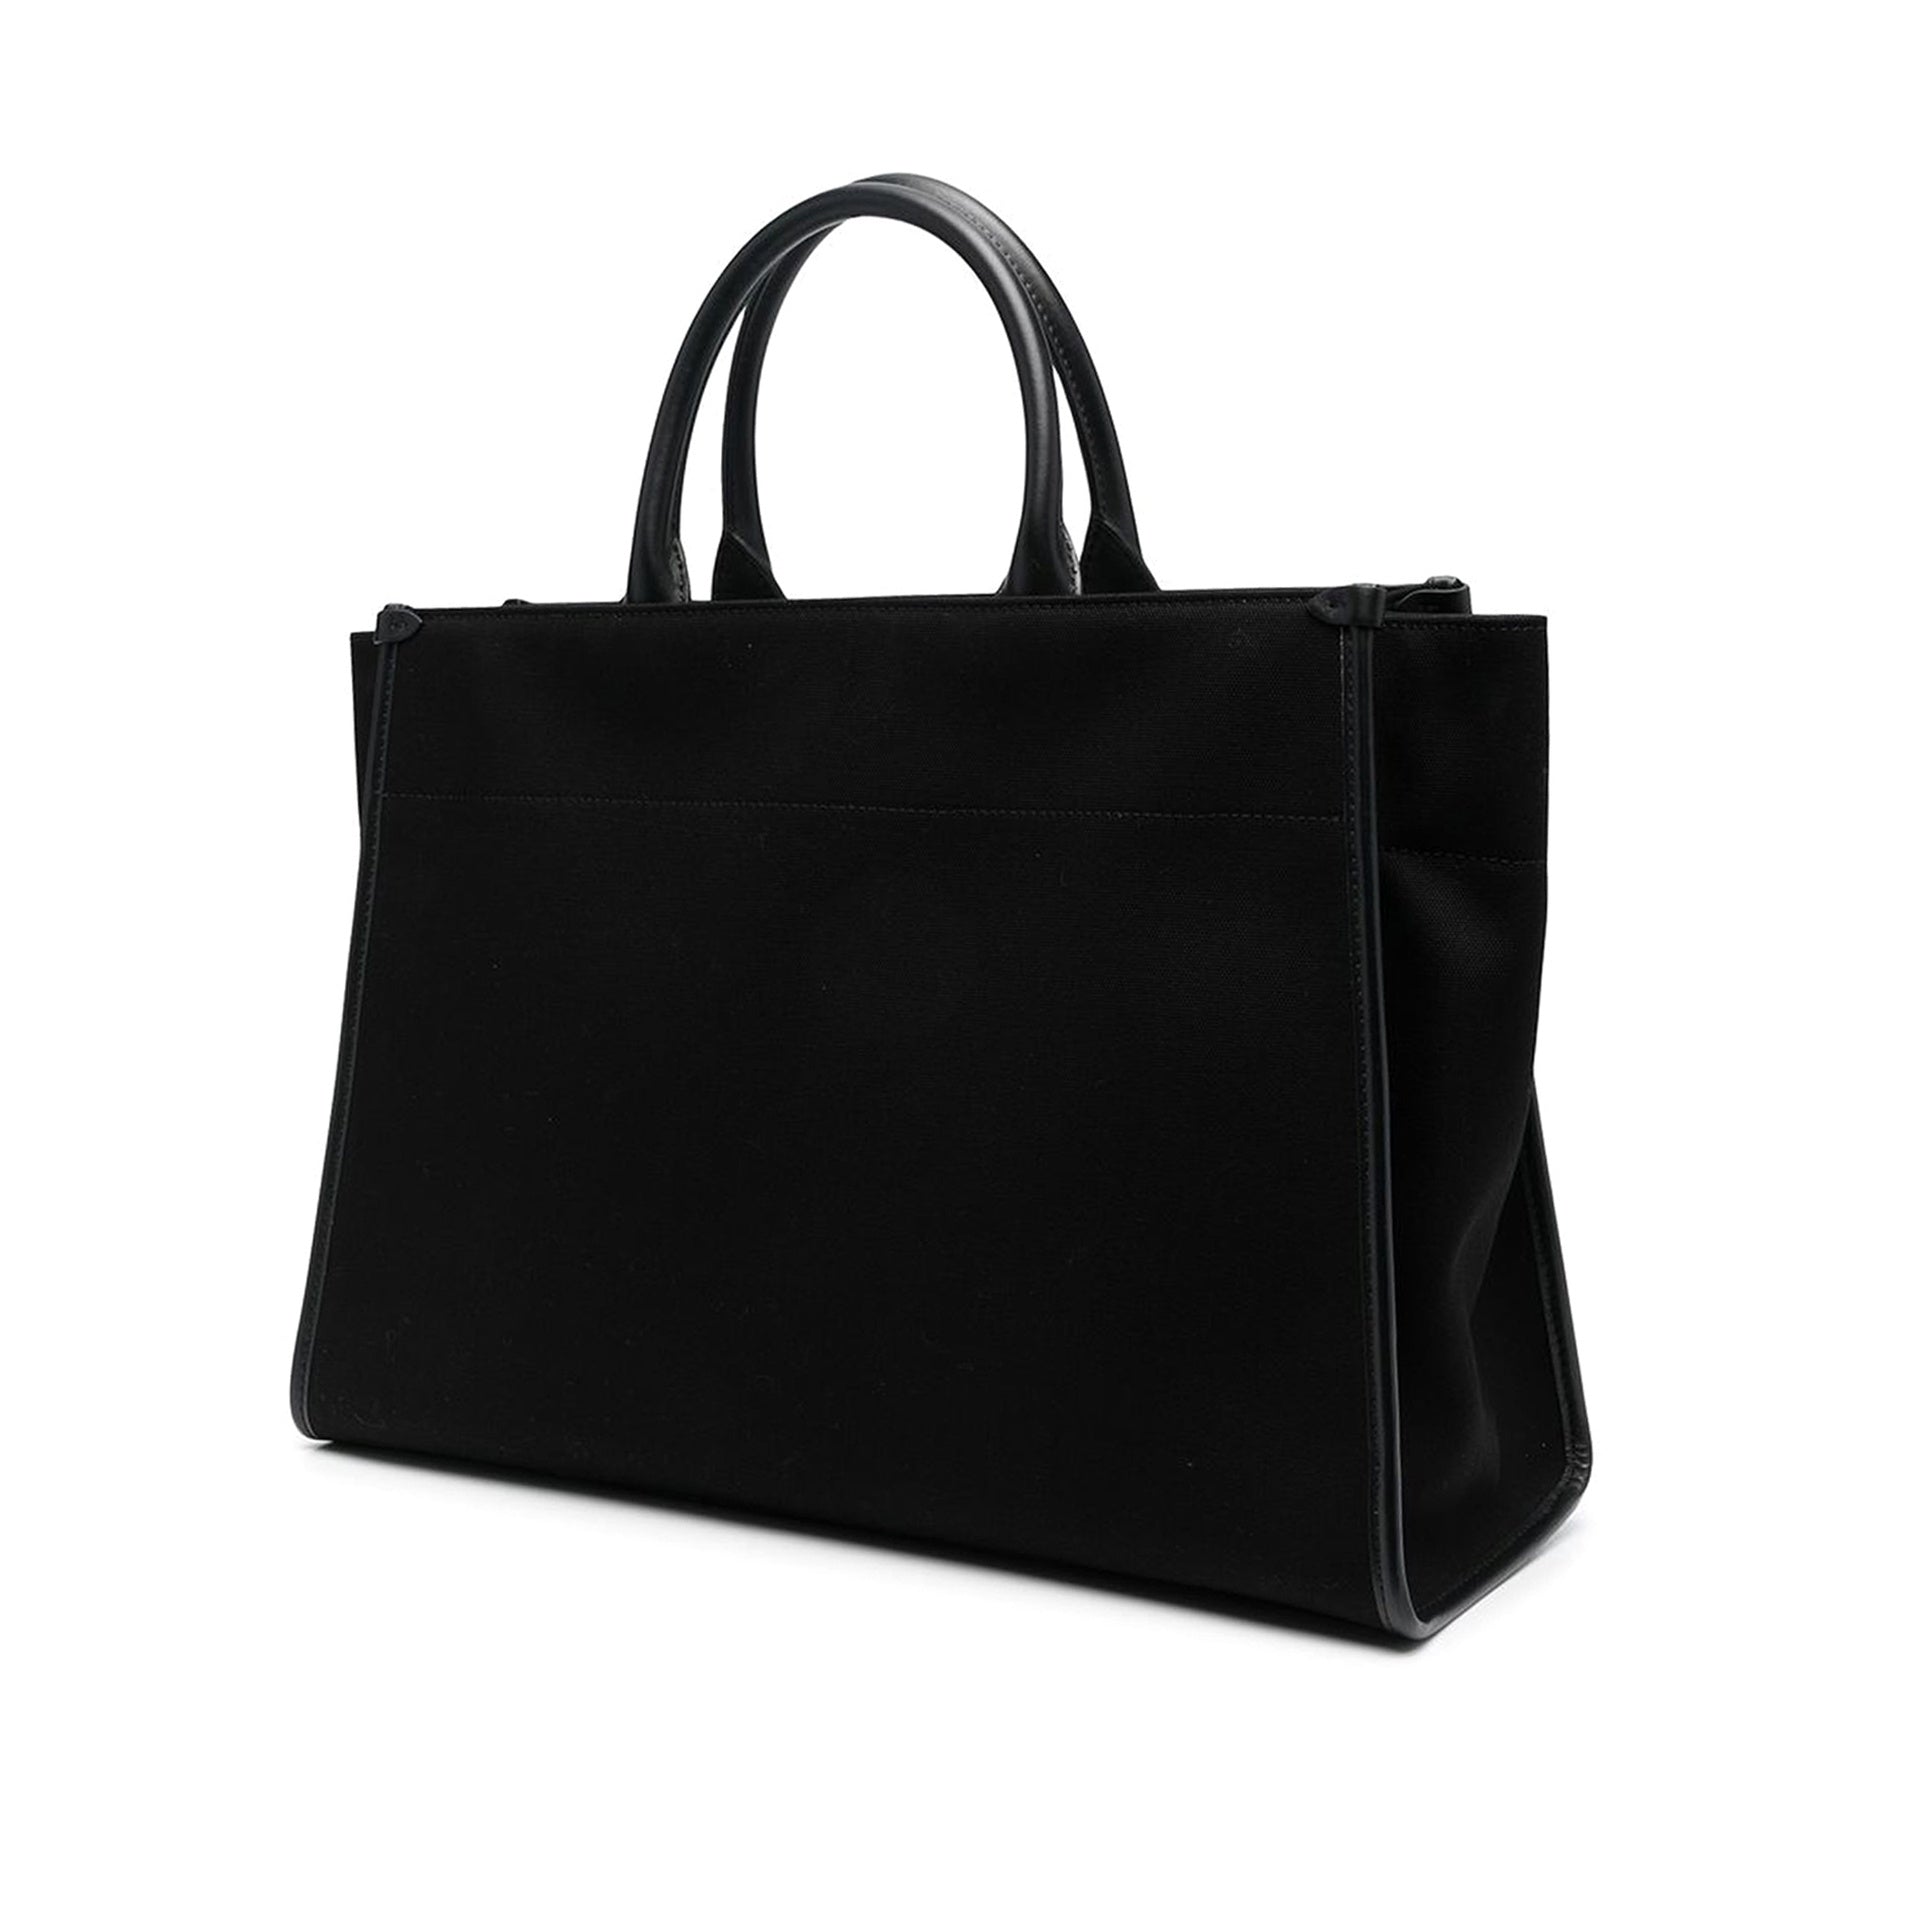 Lanvin Canvas Shopper bag